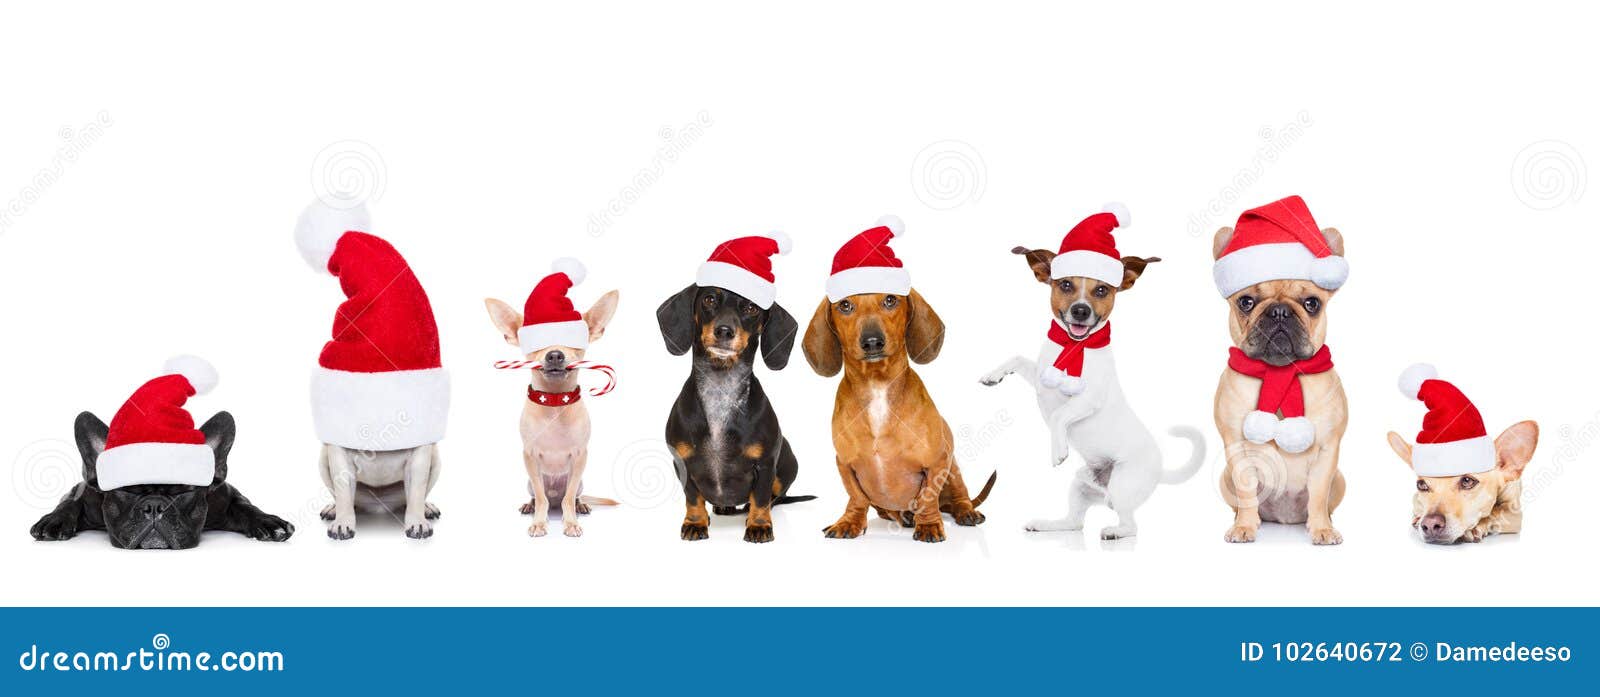 Những chú chó đáng yêu luôn làm cho mùa Giáng sinh trở nên đặc biệt hơn. Hãy nhấn play để xem những bức ảnh đáng yêu về động vật trong ngày lễ Giáng sinh này.